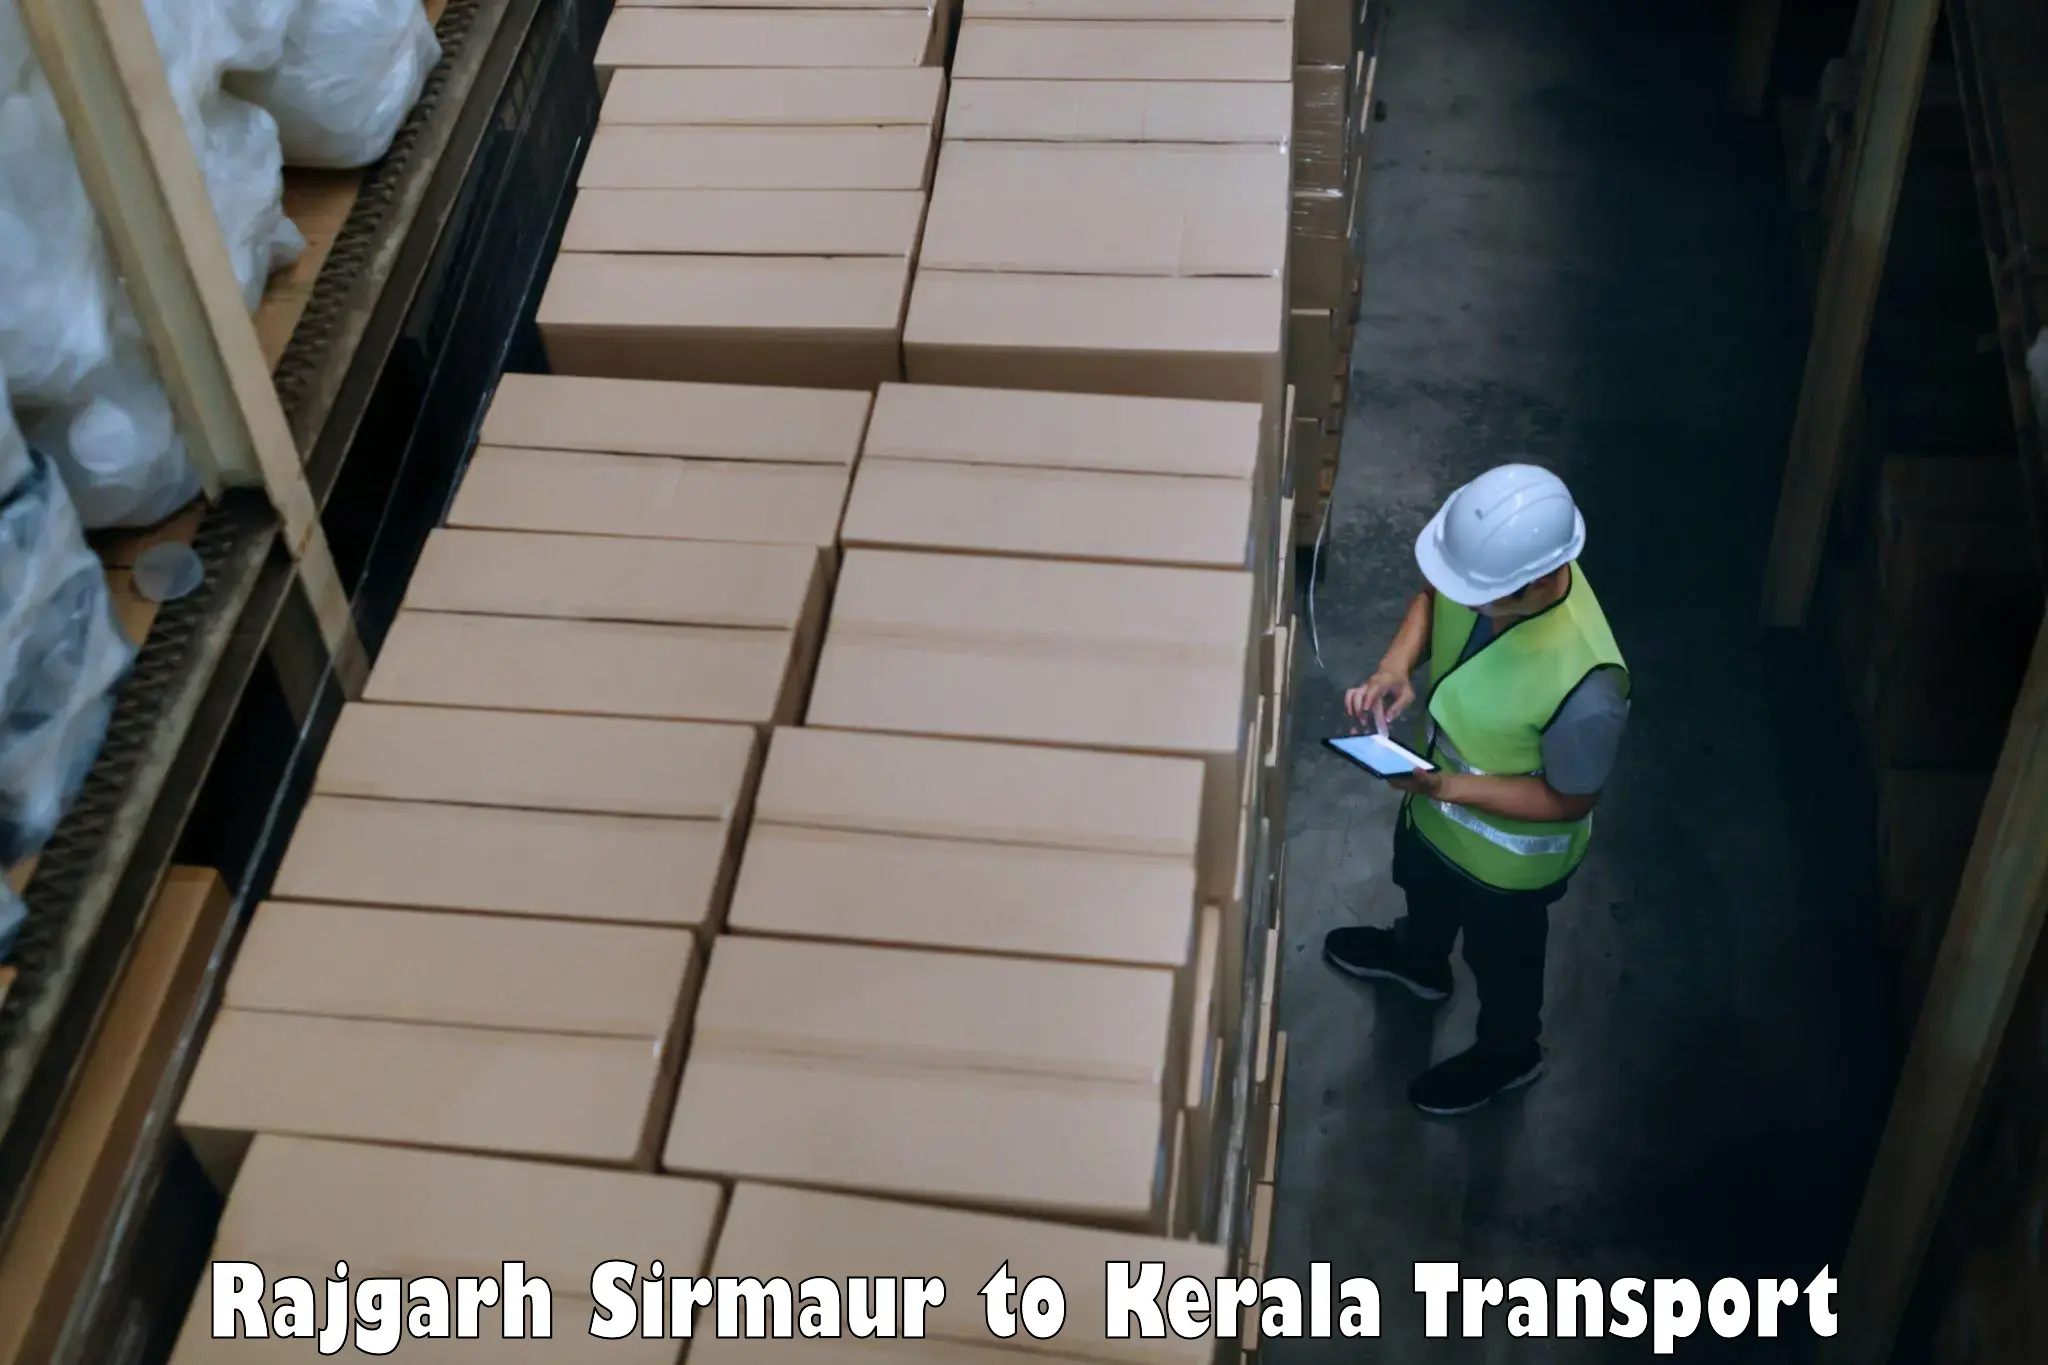 Furniture transport service Rajgarh Sirmaur to Kothamangalam